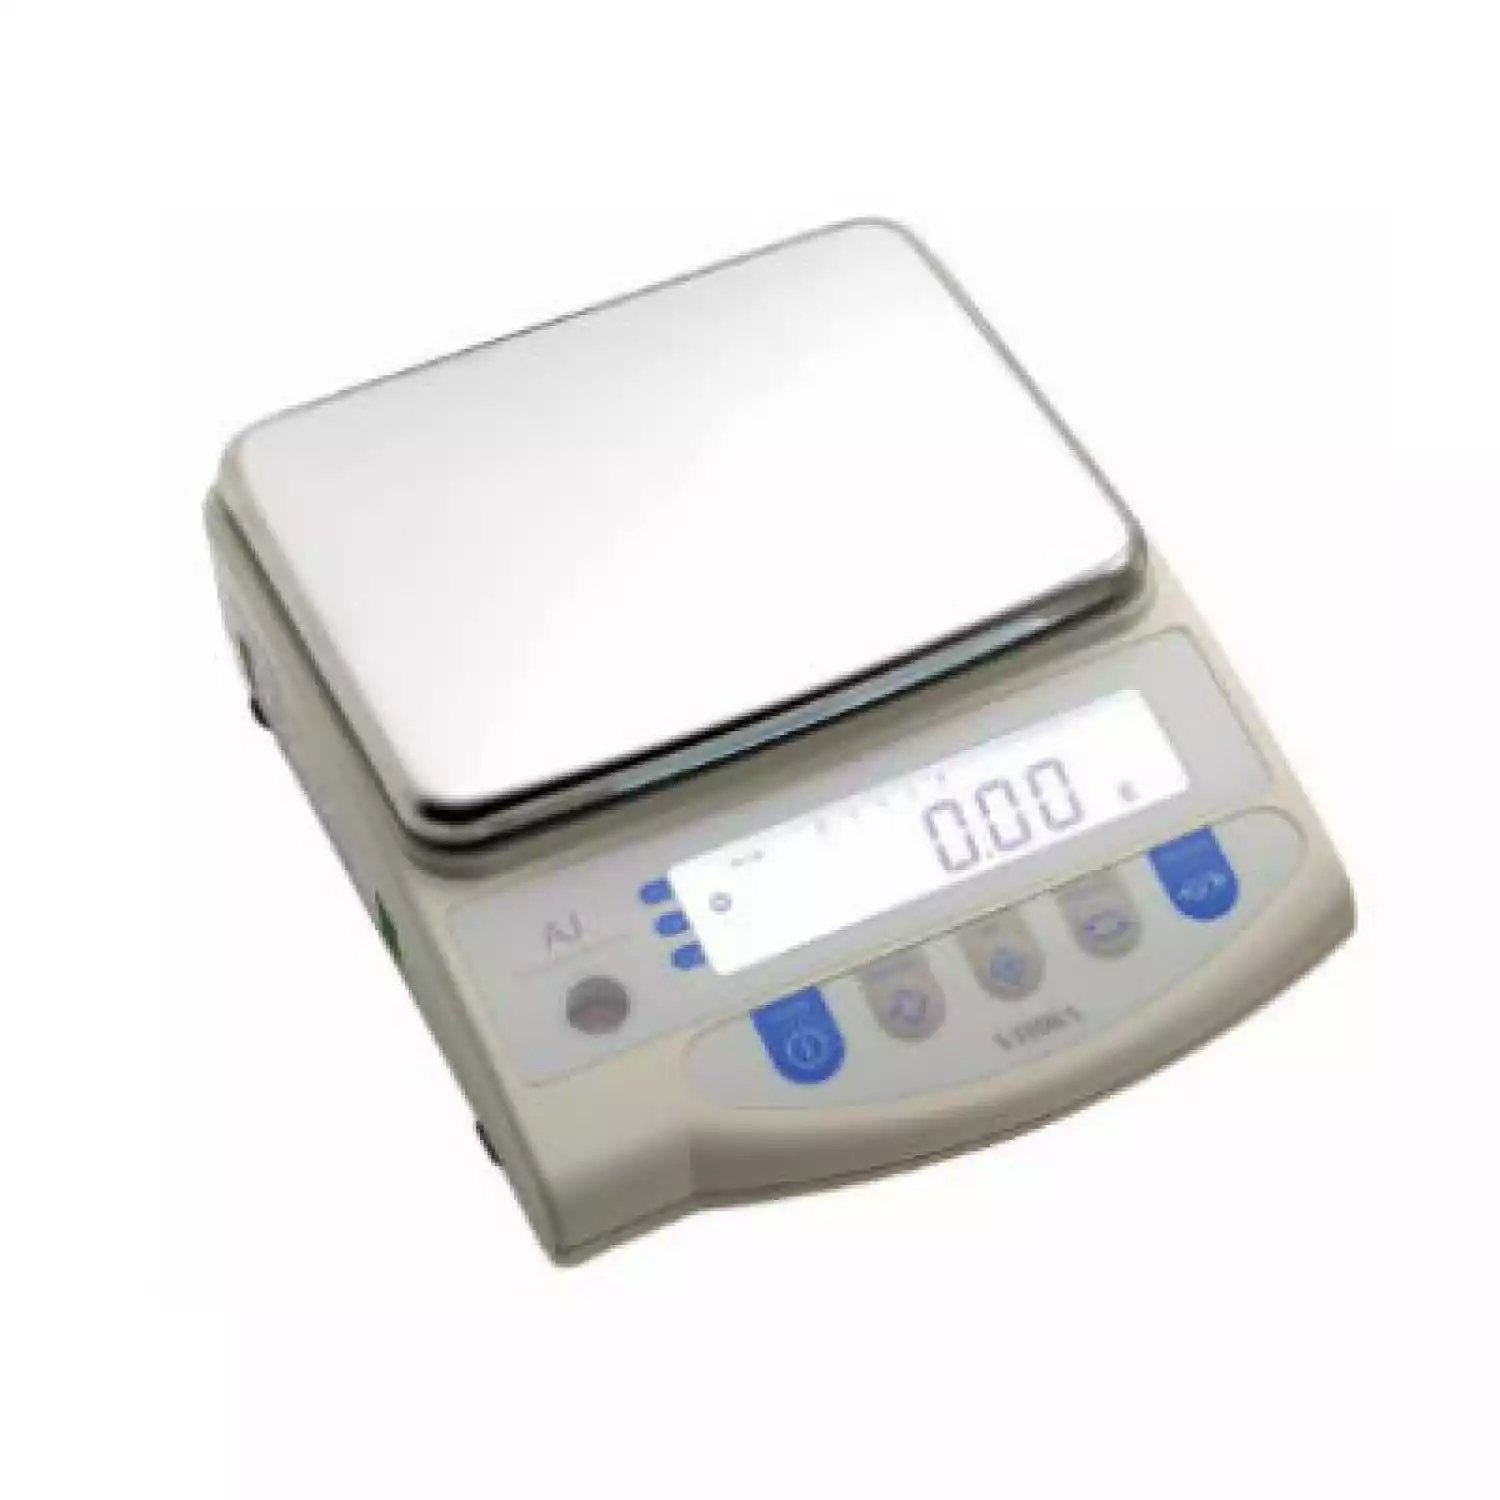 AJ-2200CE весы лабораторные (НПВ=2200 г; d=0,01 г) - 1